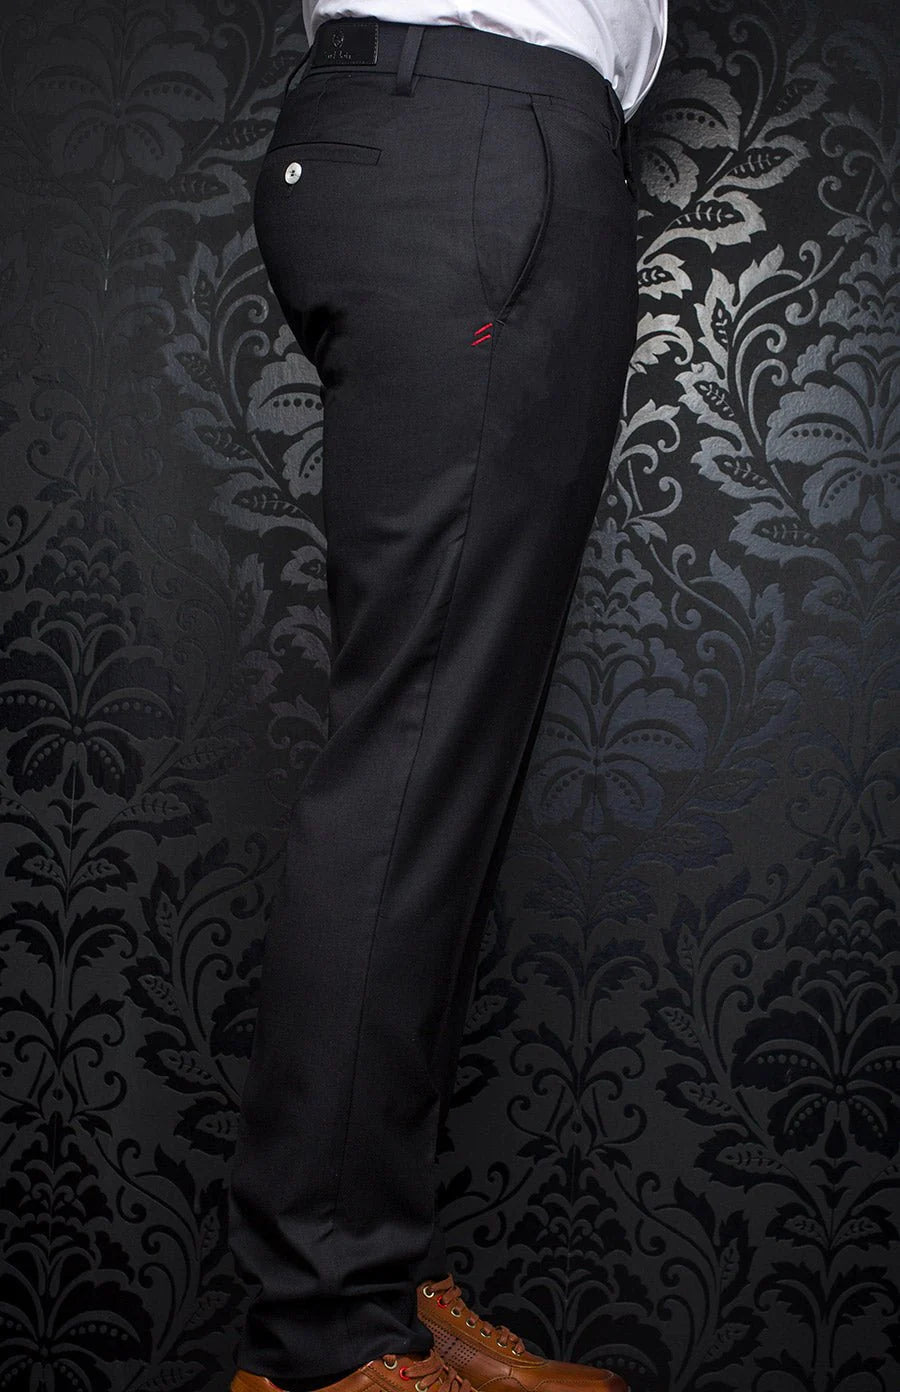 AU NOIR WESSON-CRAIG DRESS PANT - BLACK